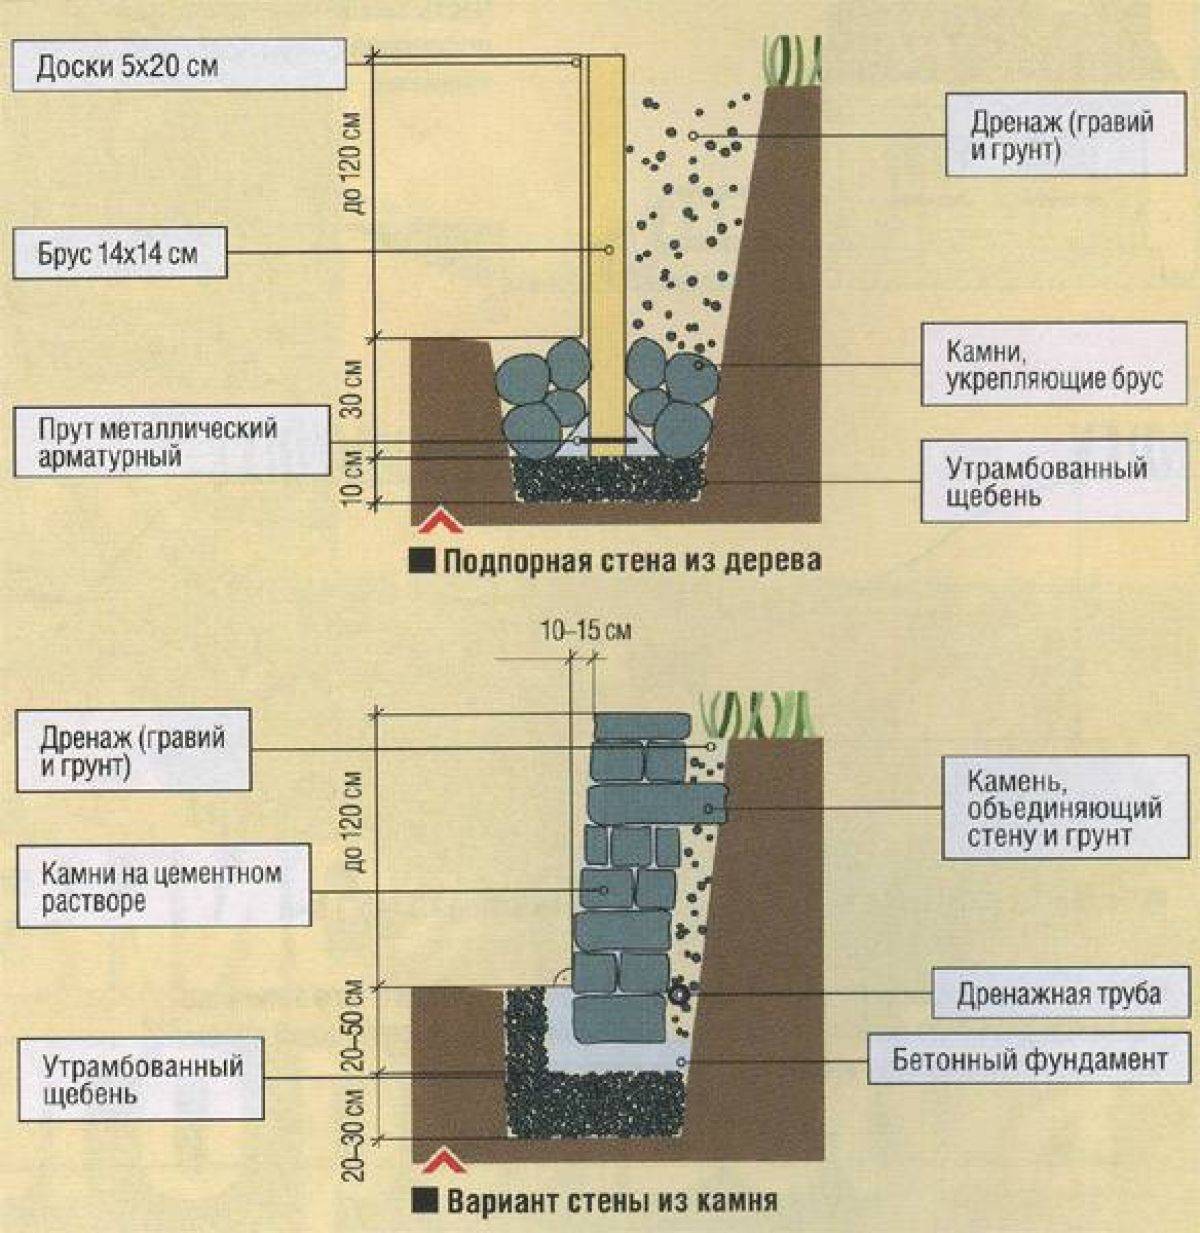 Как сделать подпорную стенку из бетона своими руками — пошаговый план